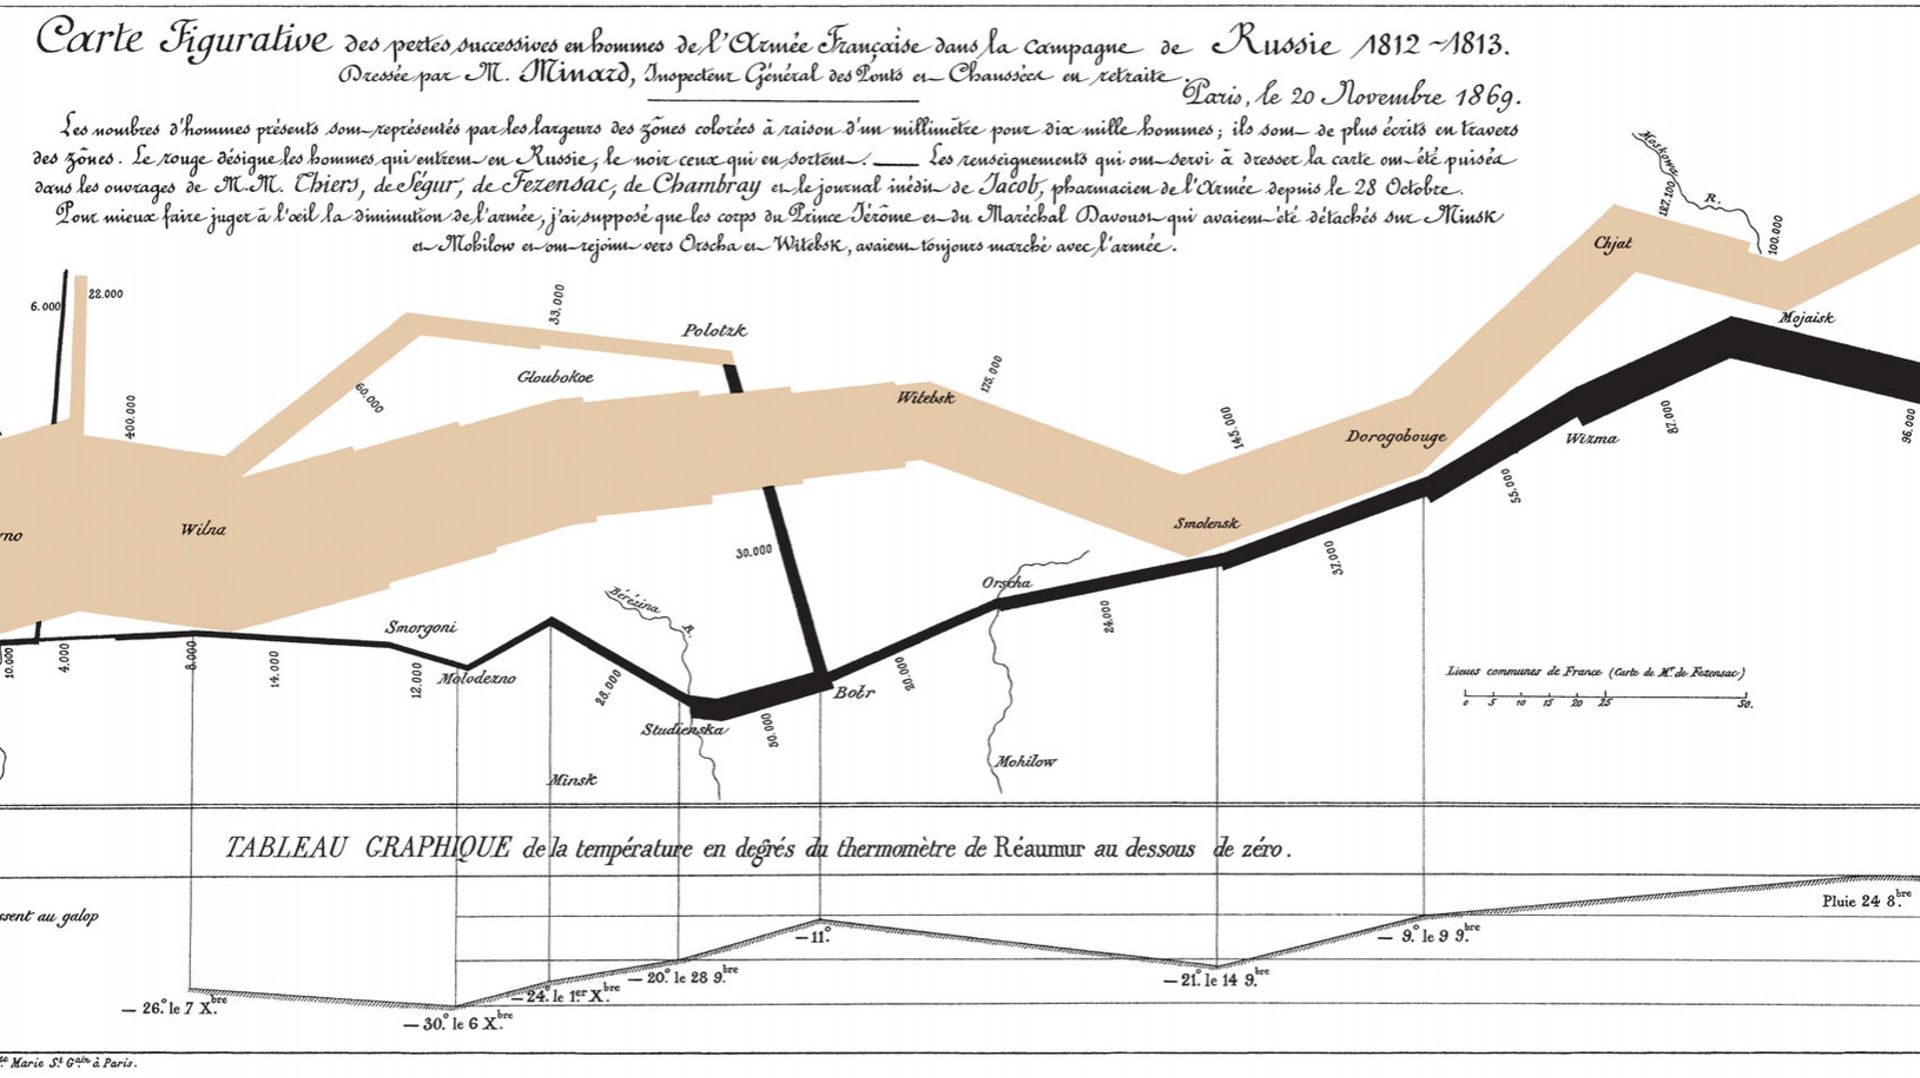 Carte figurative de M. Minard, datée de 1869. On peut y voir, en beige, le trajet de la Grande armée du fleuve Niémen (frontière russe) à Moscou et en noir le trajet de retour. Un millimètre équivaut à 10.000 hommes (taille réelle du graphique). En dessou